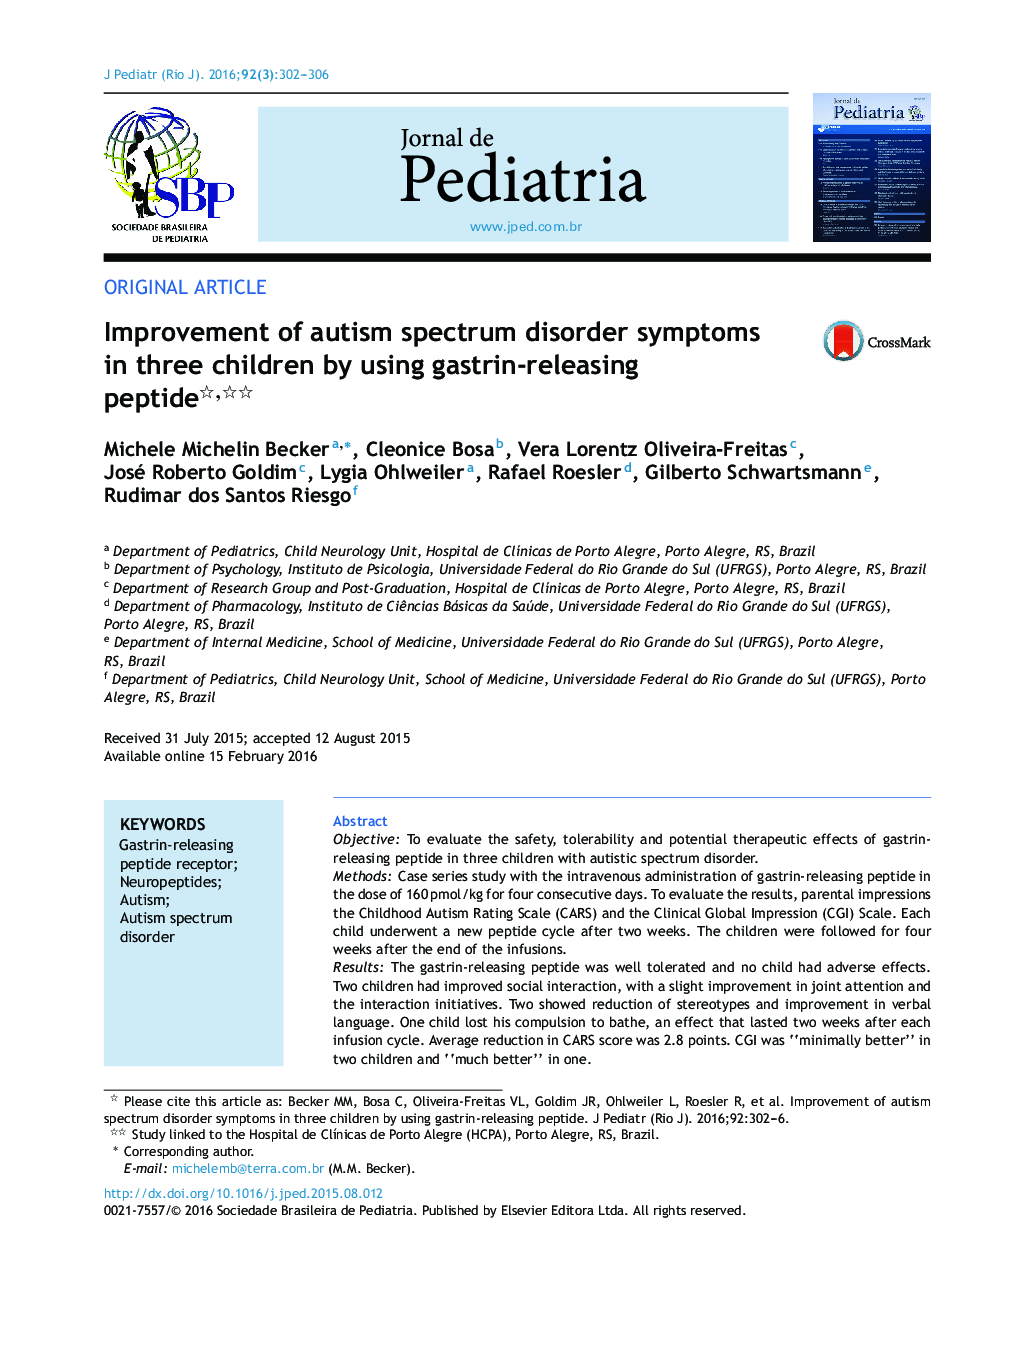 بهبود علائم اختلال طیف اوتیسم در سه کودک با استفاده از پپتید آزاد کننده گاسترین 